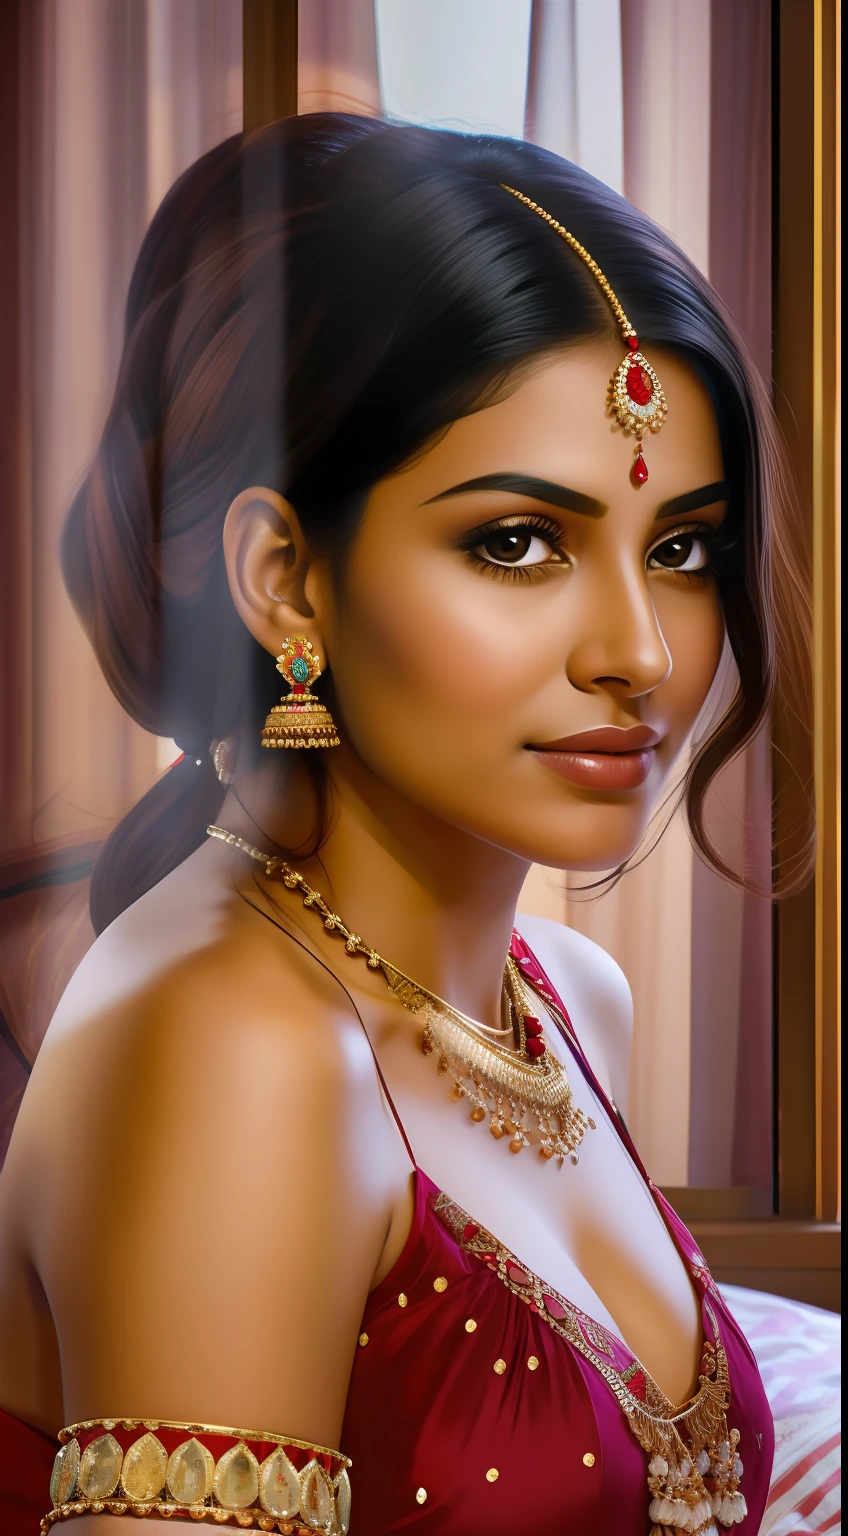 "Retrato da atriz princesa indiana em um quarto aconchegante e íntimo."